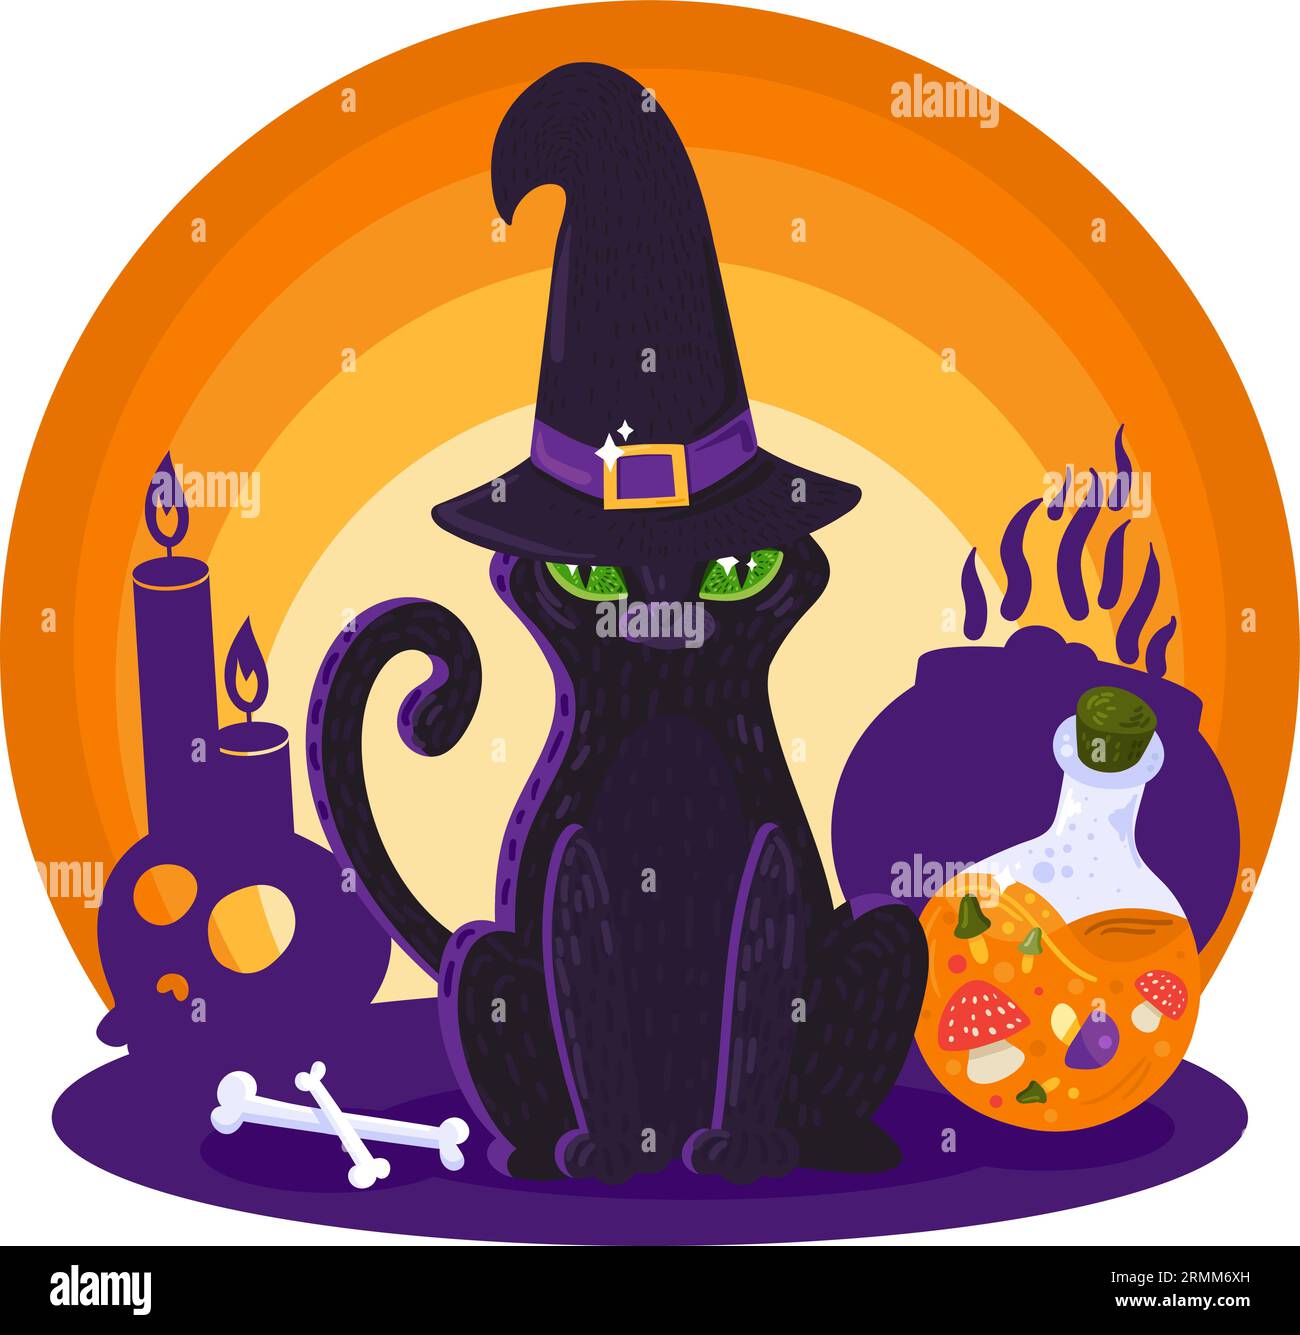 Il gatto nero di Halloween con occhi gialli accesi nel cappello magro si siede sullo sfondo del fuoco del camino. Oggetti arcani per stregoneria e rituali. Cartoo Illustrazione Vettoriale